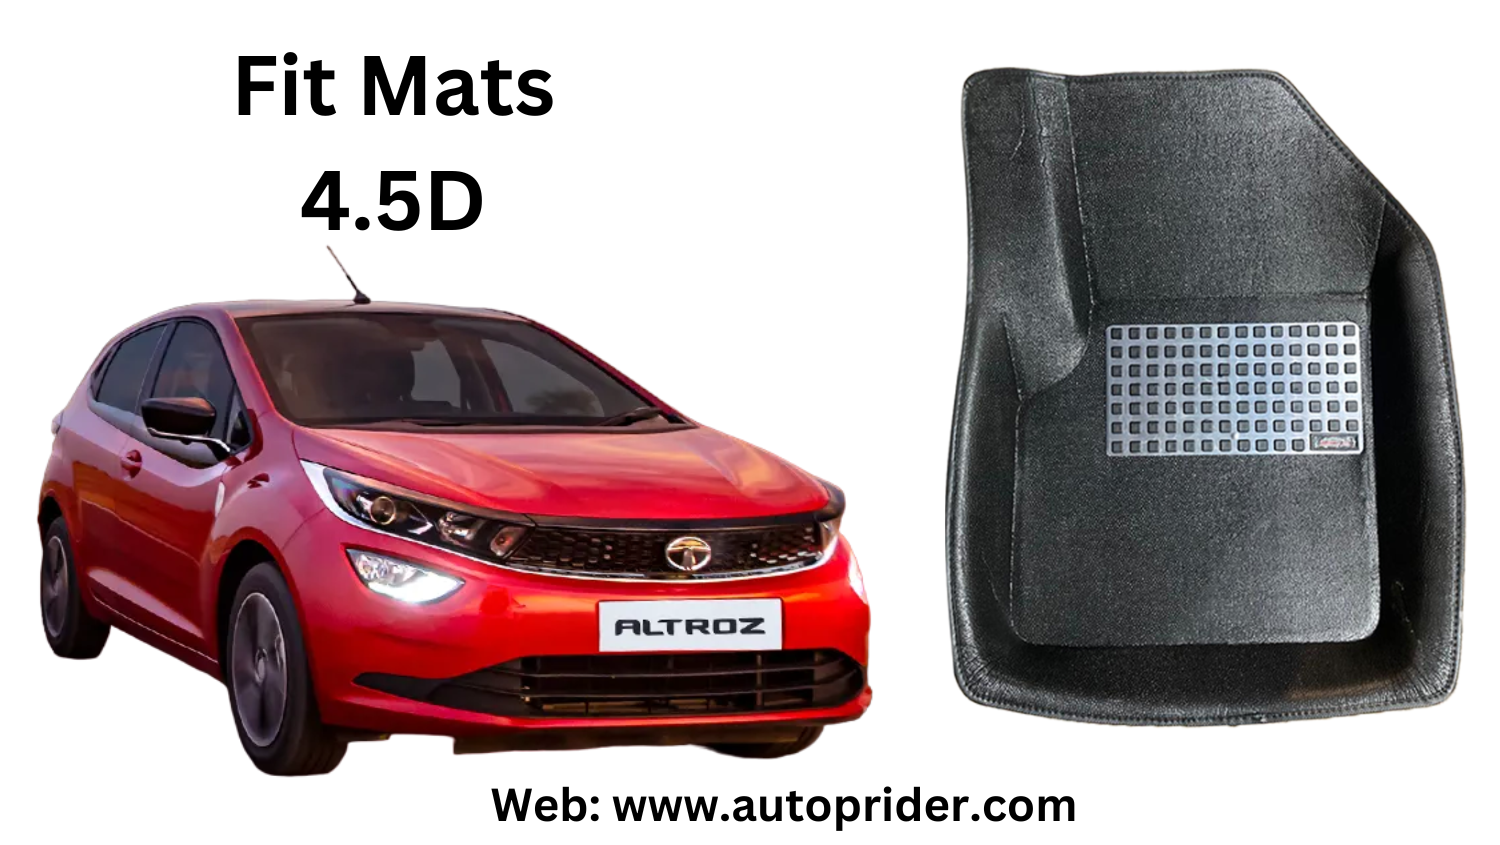 Autoprider | Fit Mats 4.5D Economy Car Mats for Tata Altroz